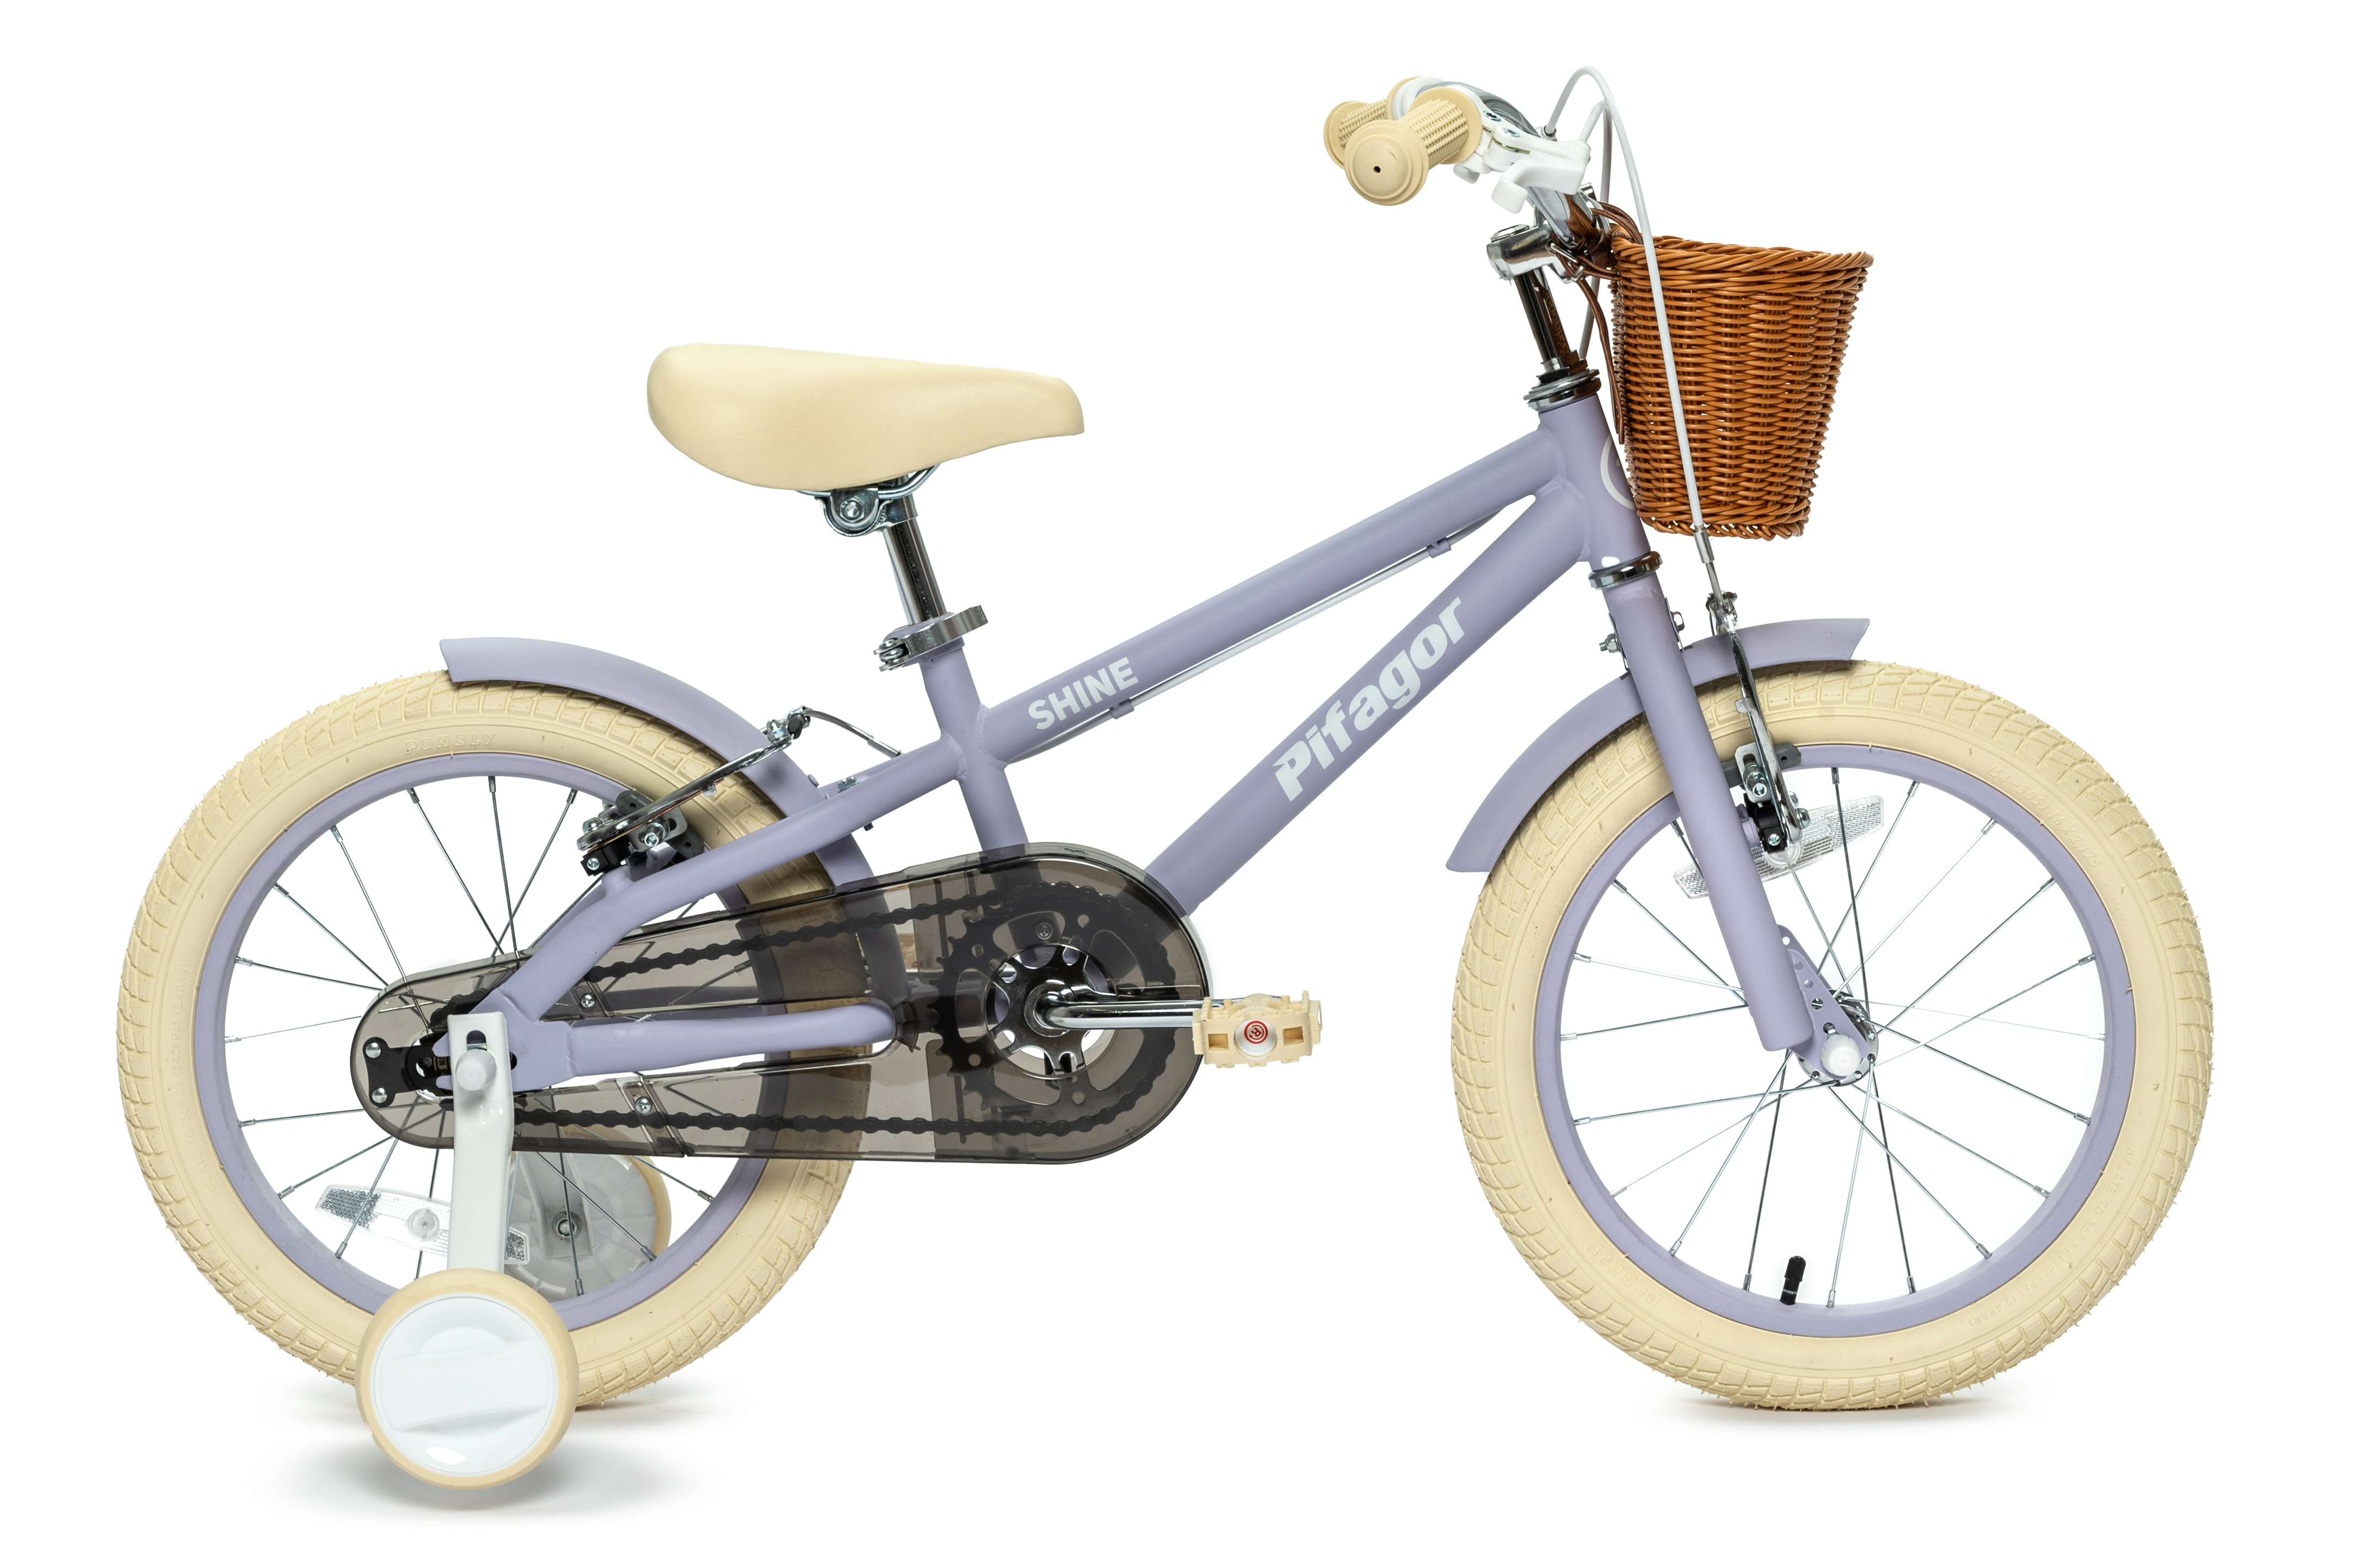 Велосипед Pifagor Shine 1613 900 ₽Фуксия, Мятный матовый, Розовый матовый, Лавандовый матовый в Москве и с доставкой